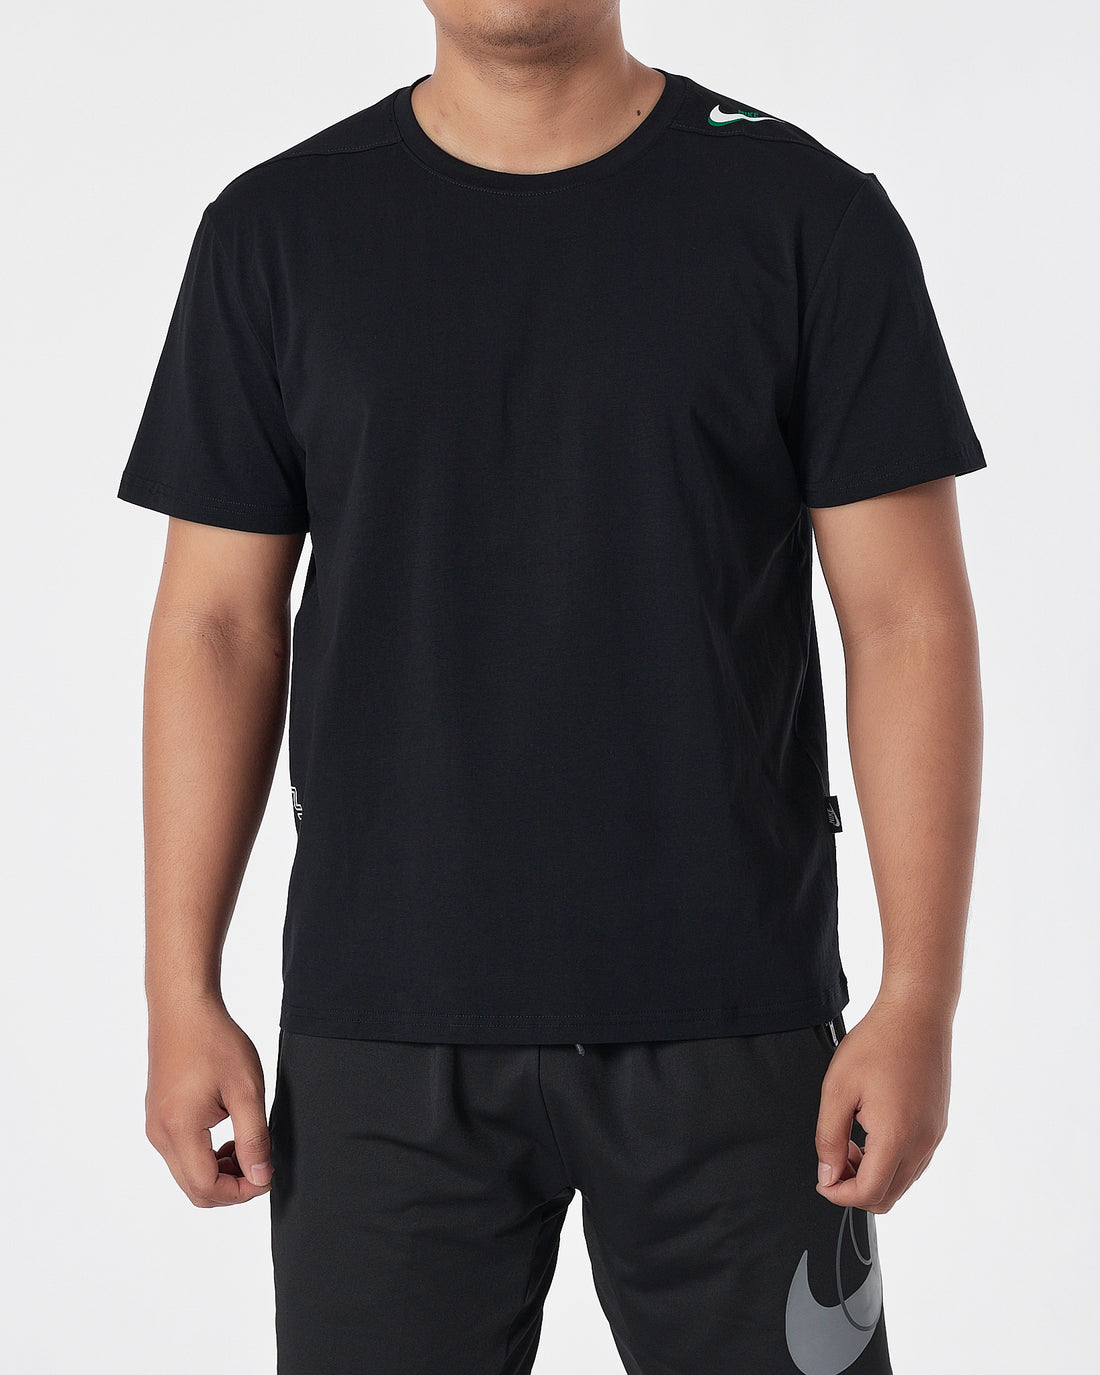 NIK Swooh  Shoulder Printed Men Black T-Shirt 13.50